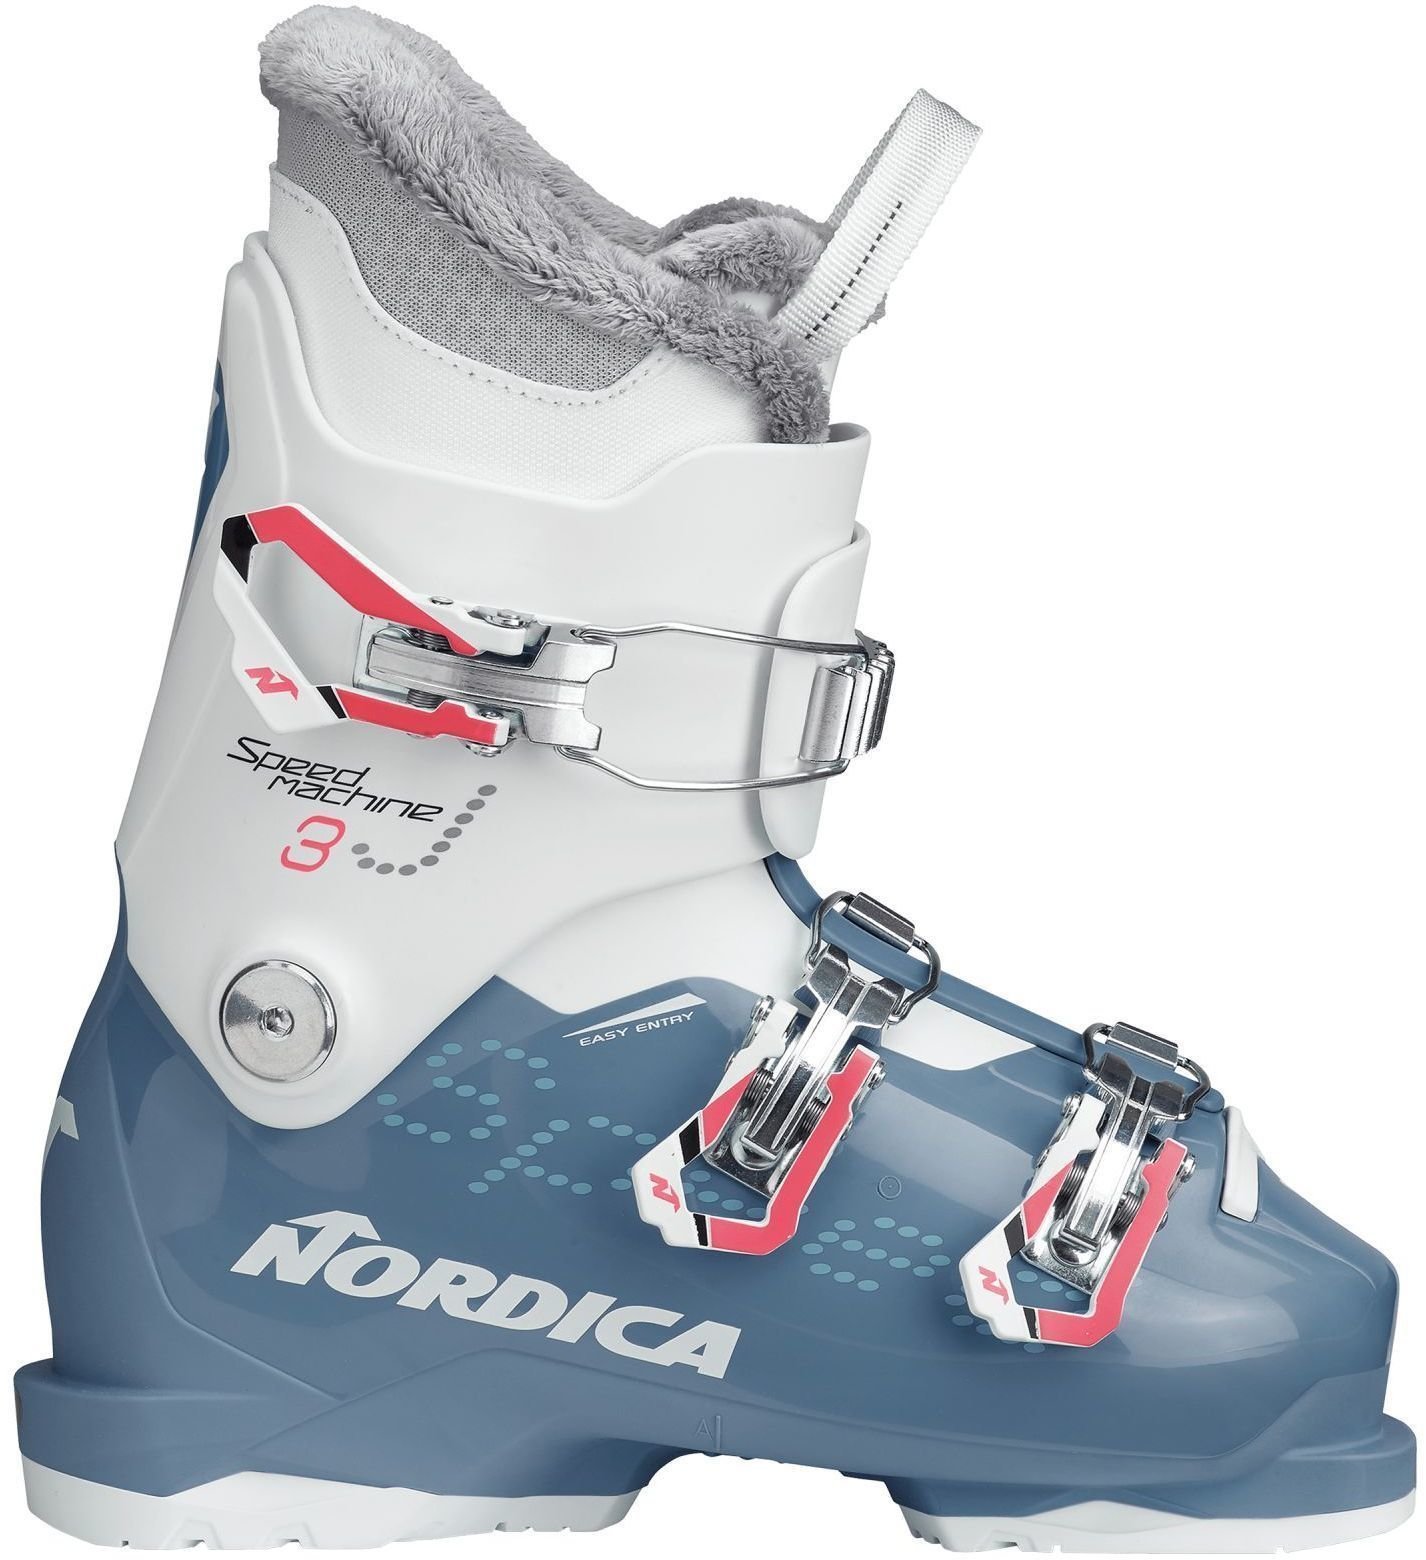 Cipele za alpsko skijanje Nordica Speedmachine J3 Light Blue/White 210 Cipele za alpsko skijanje